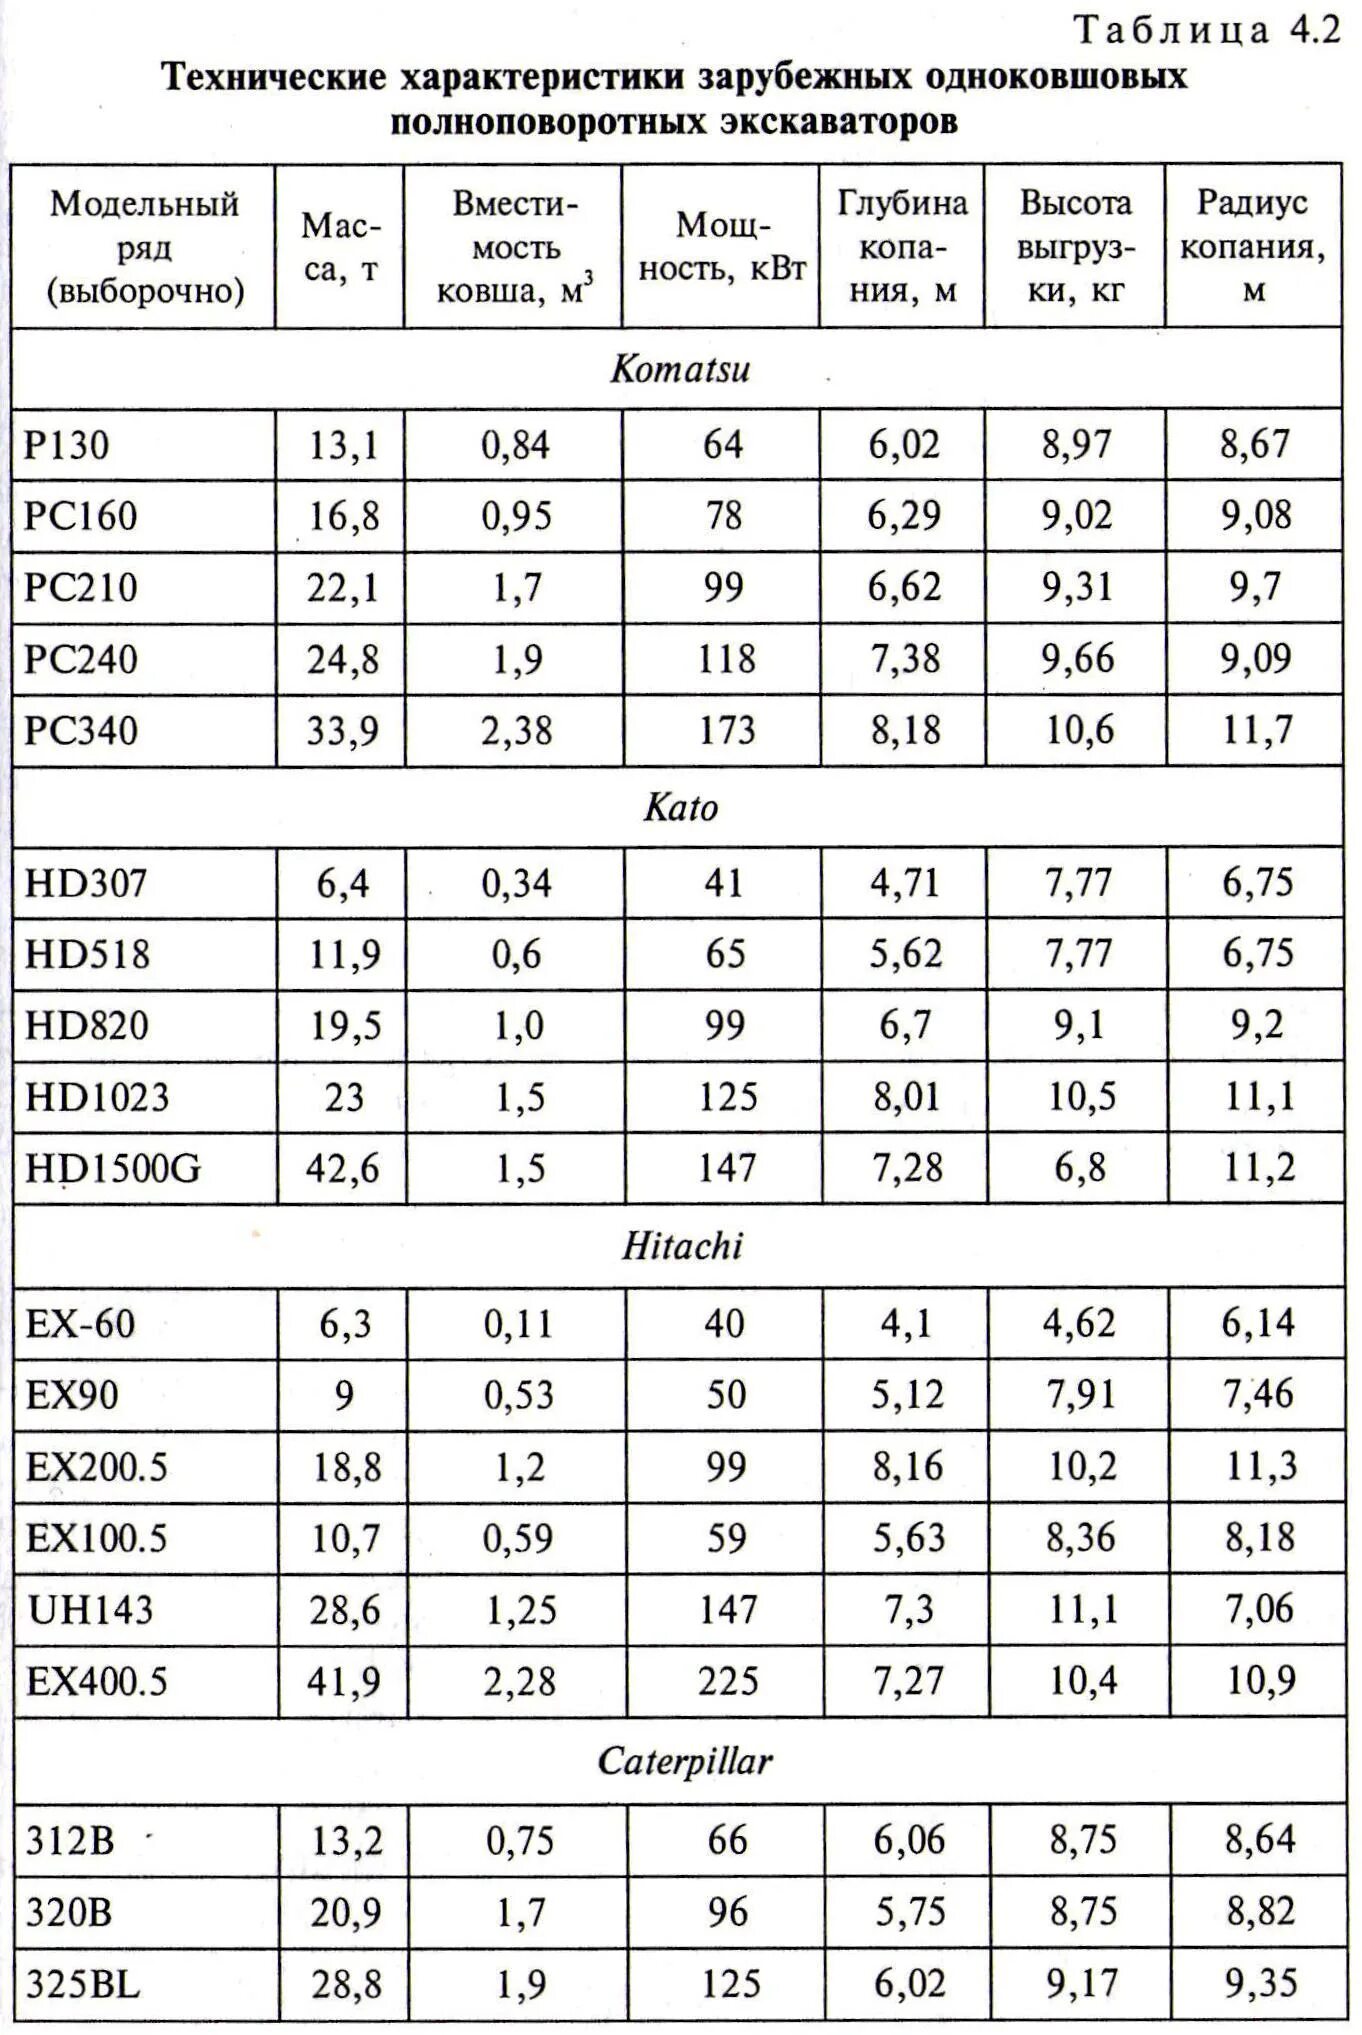 Таблица экскаваторов. Характеристики одноковшовых экскаваторов таблица. Технические характеристики экскаваторов таблица. Технические характеристики одноковшовых экскаваторов. Производительность экскаваторов таблица.